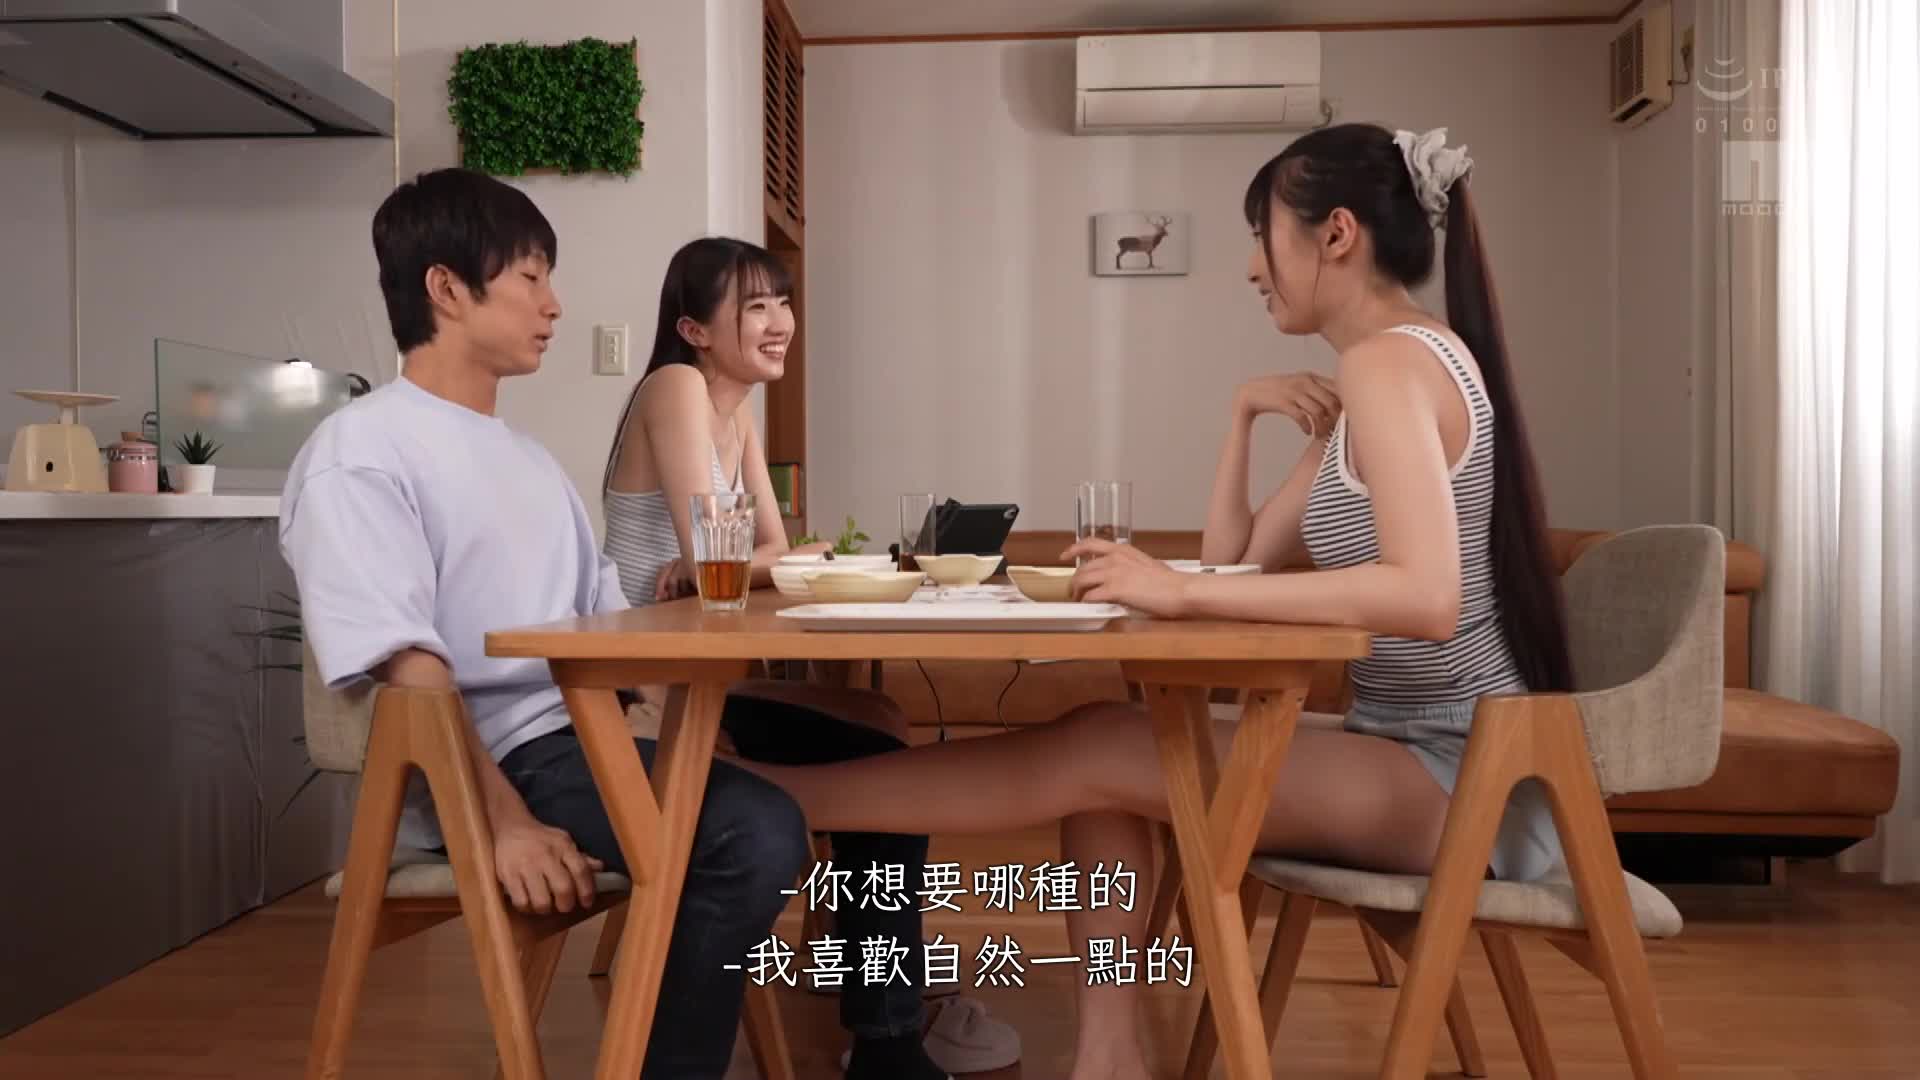 她的雙胞胎姐姐用過於肉食的方法誘惑我 瀧冬煇 - AV大平台 - 中文字幕，成人影片，AV，國產，線上看